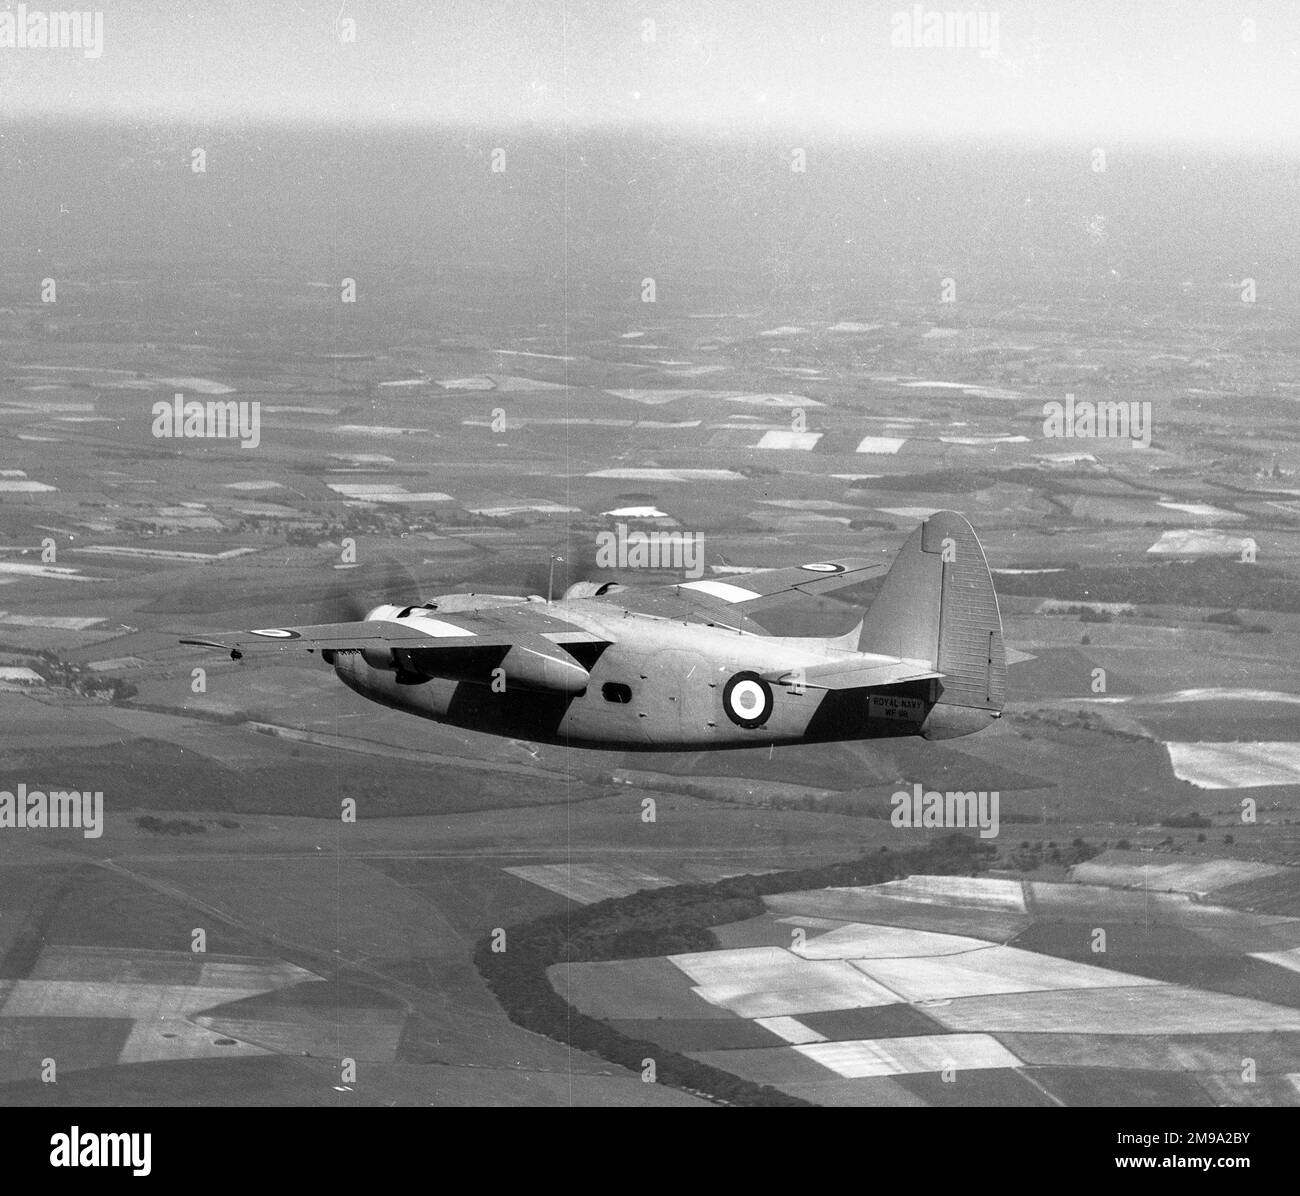 Percival Sea Prince T Mk.1 WF118 (msn PAC/57/12)WF118. Il primo volo è stato effettuato il 28 giugno 1951, consegnato il 13 agosto 1951. Registrato come G-DACA a disposizione, presso St. Athan entro il 2013. Foto Stock